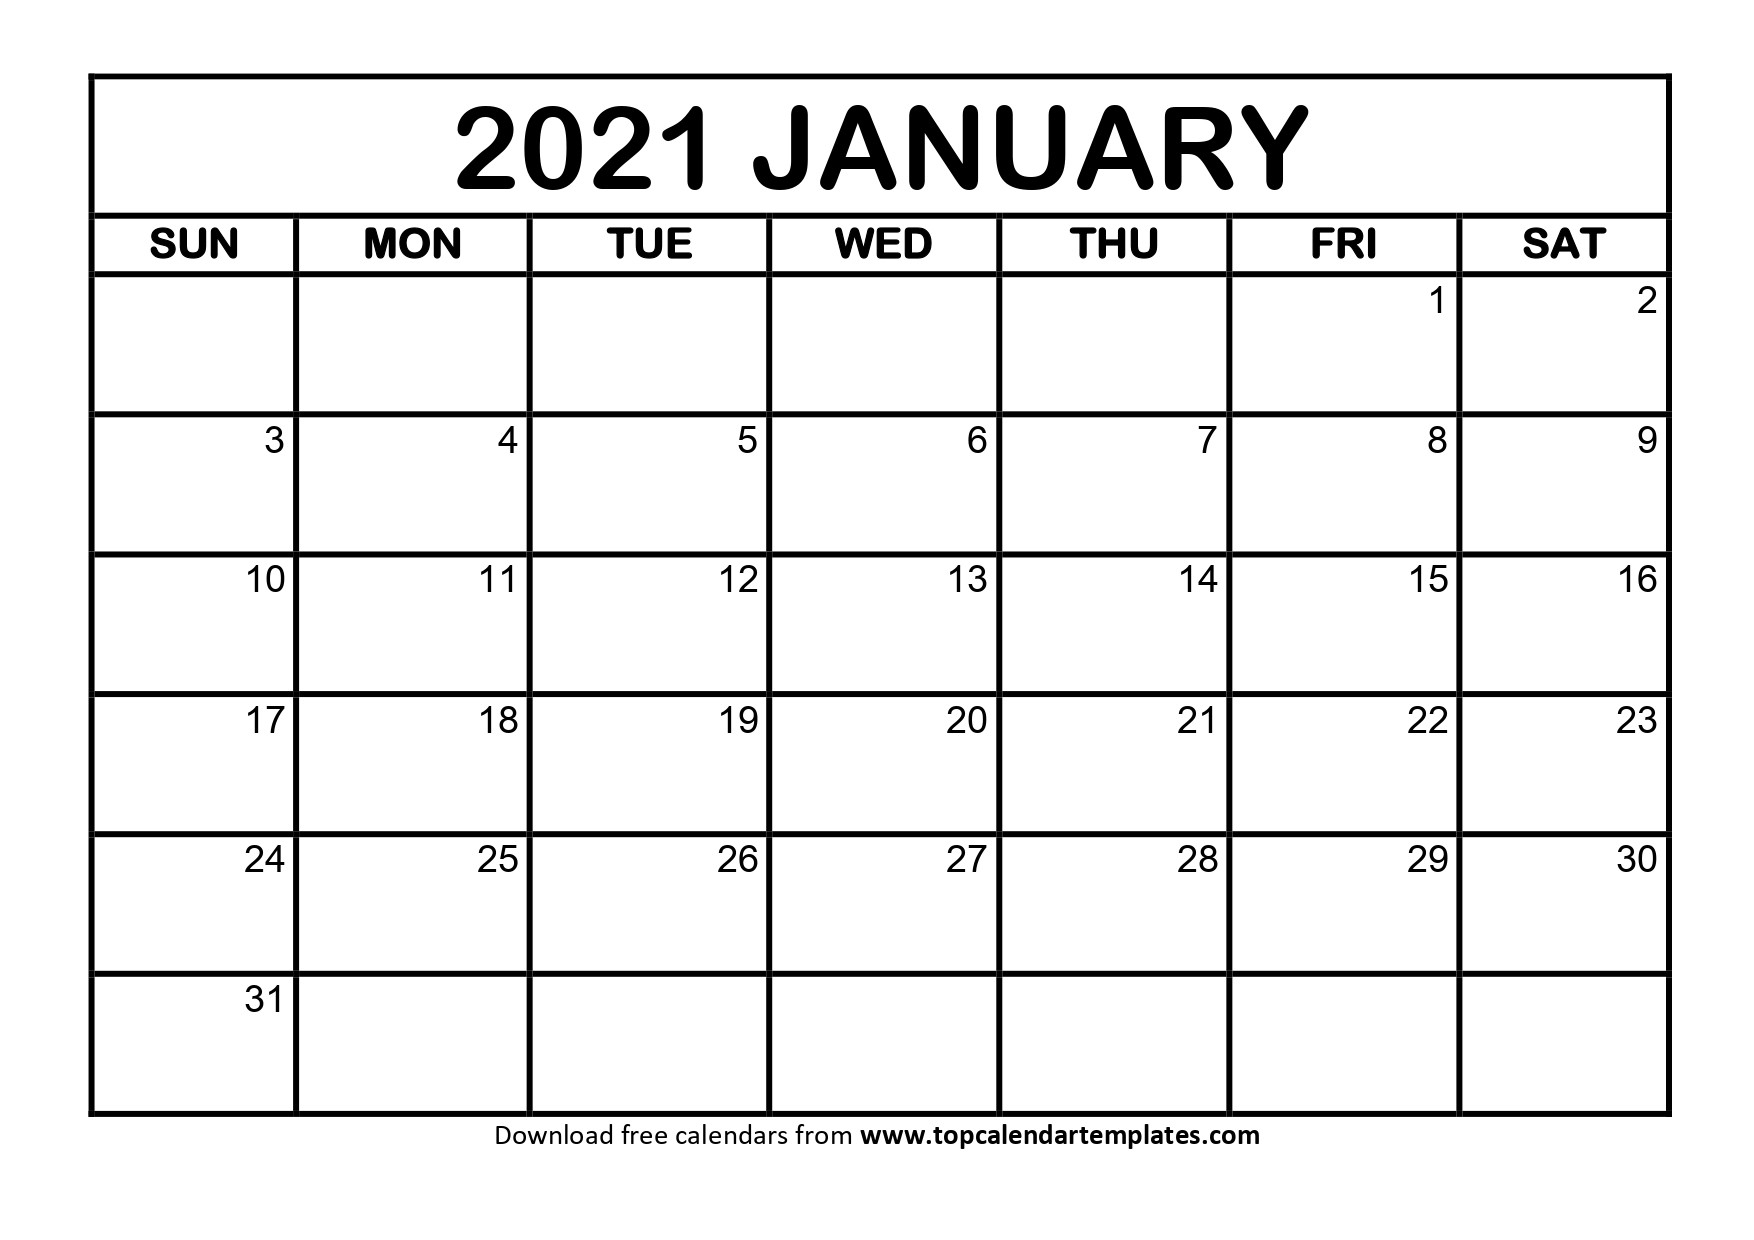 January 2021 Printable Calendar - Editable Templates-Absentee Calendar 2021